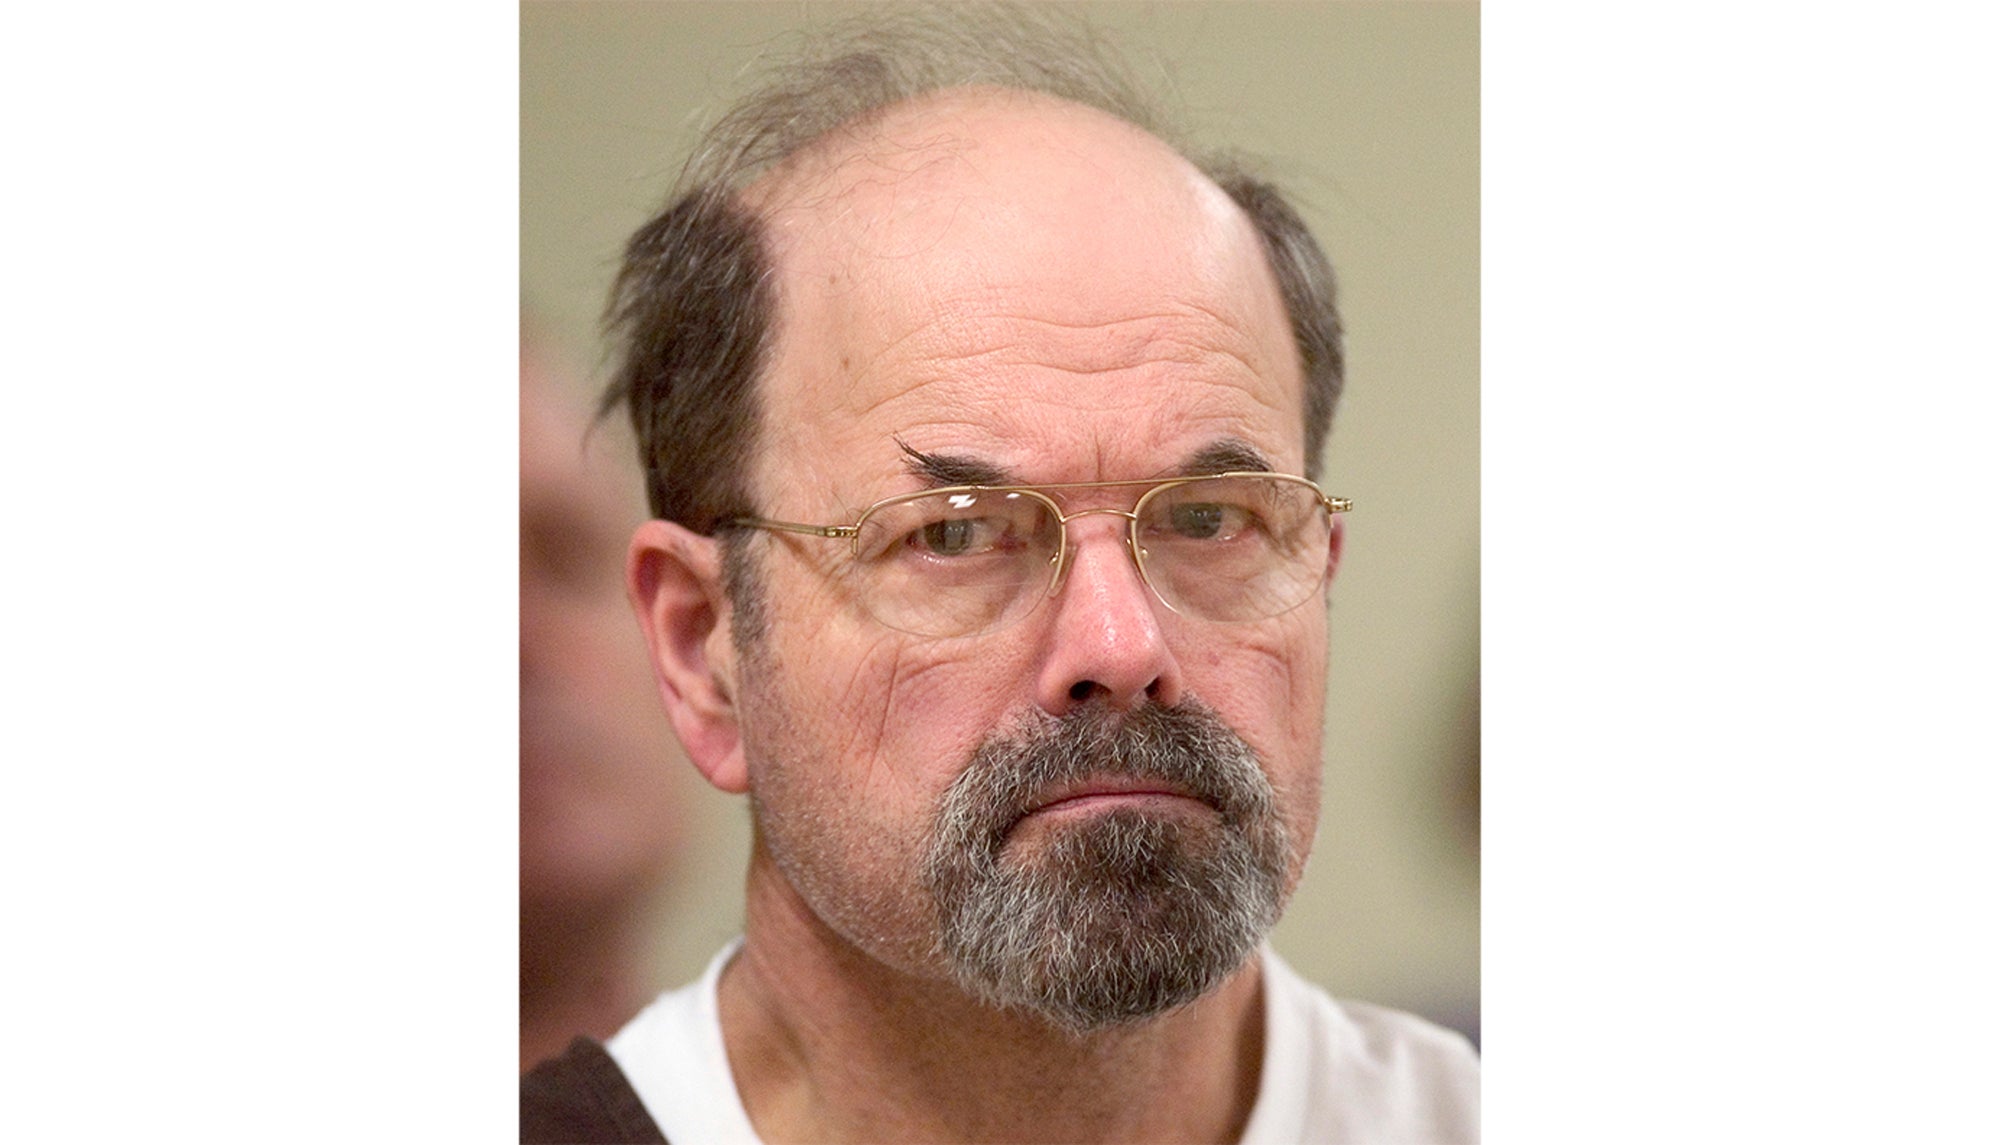 Dennis Rader in court in El Dorado, Kansas in 2005